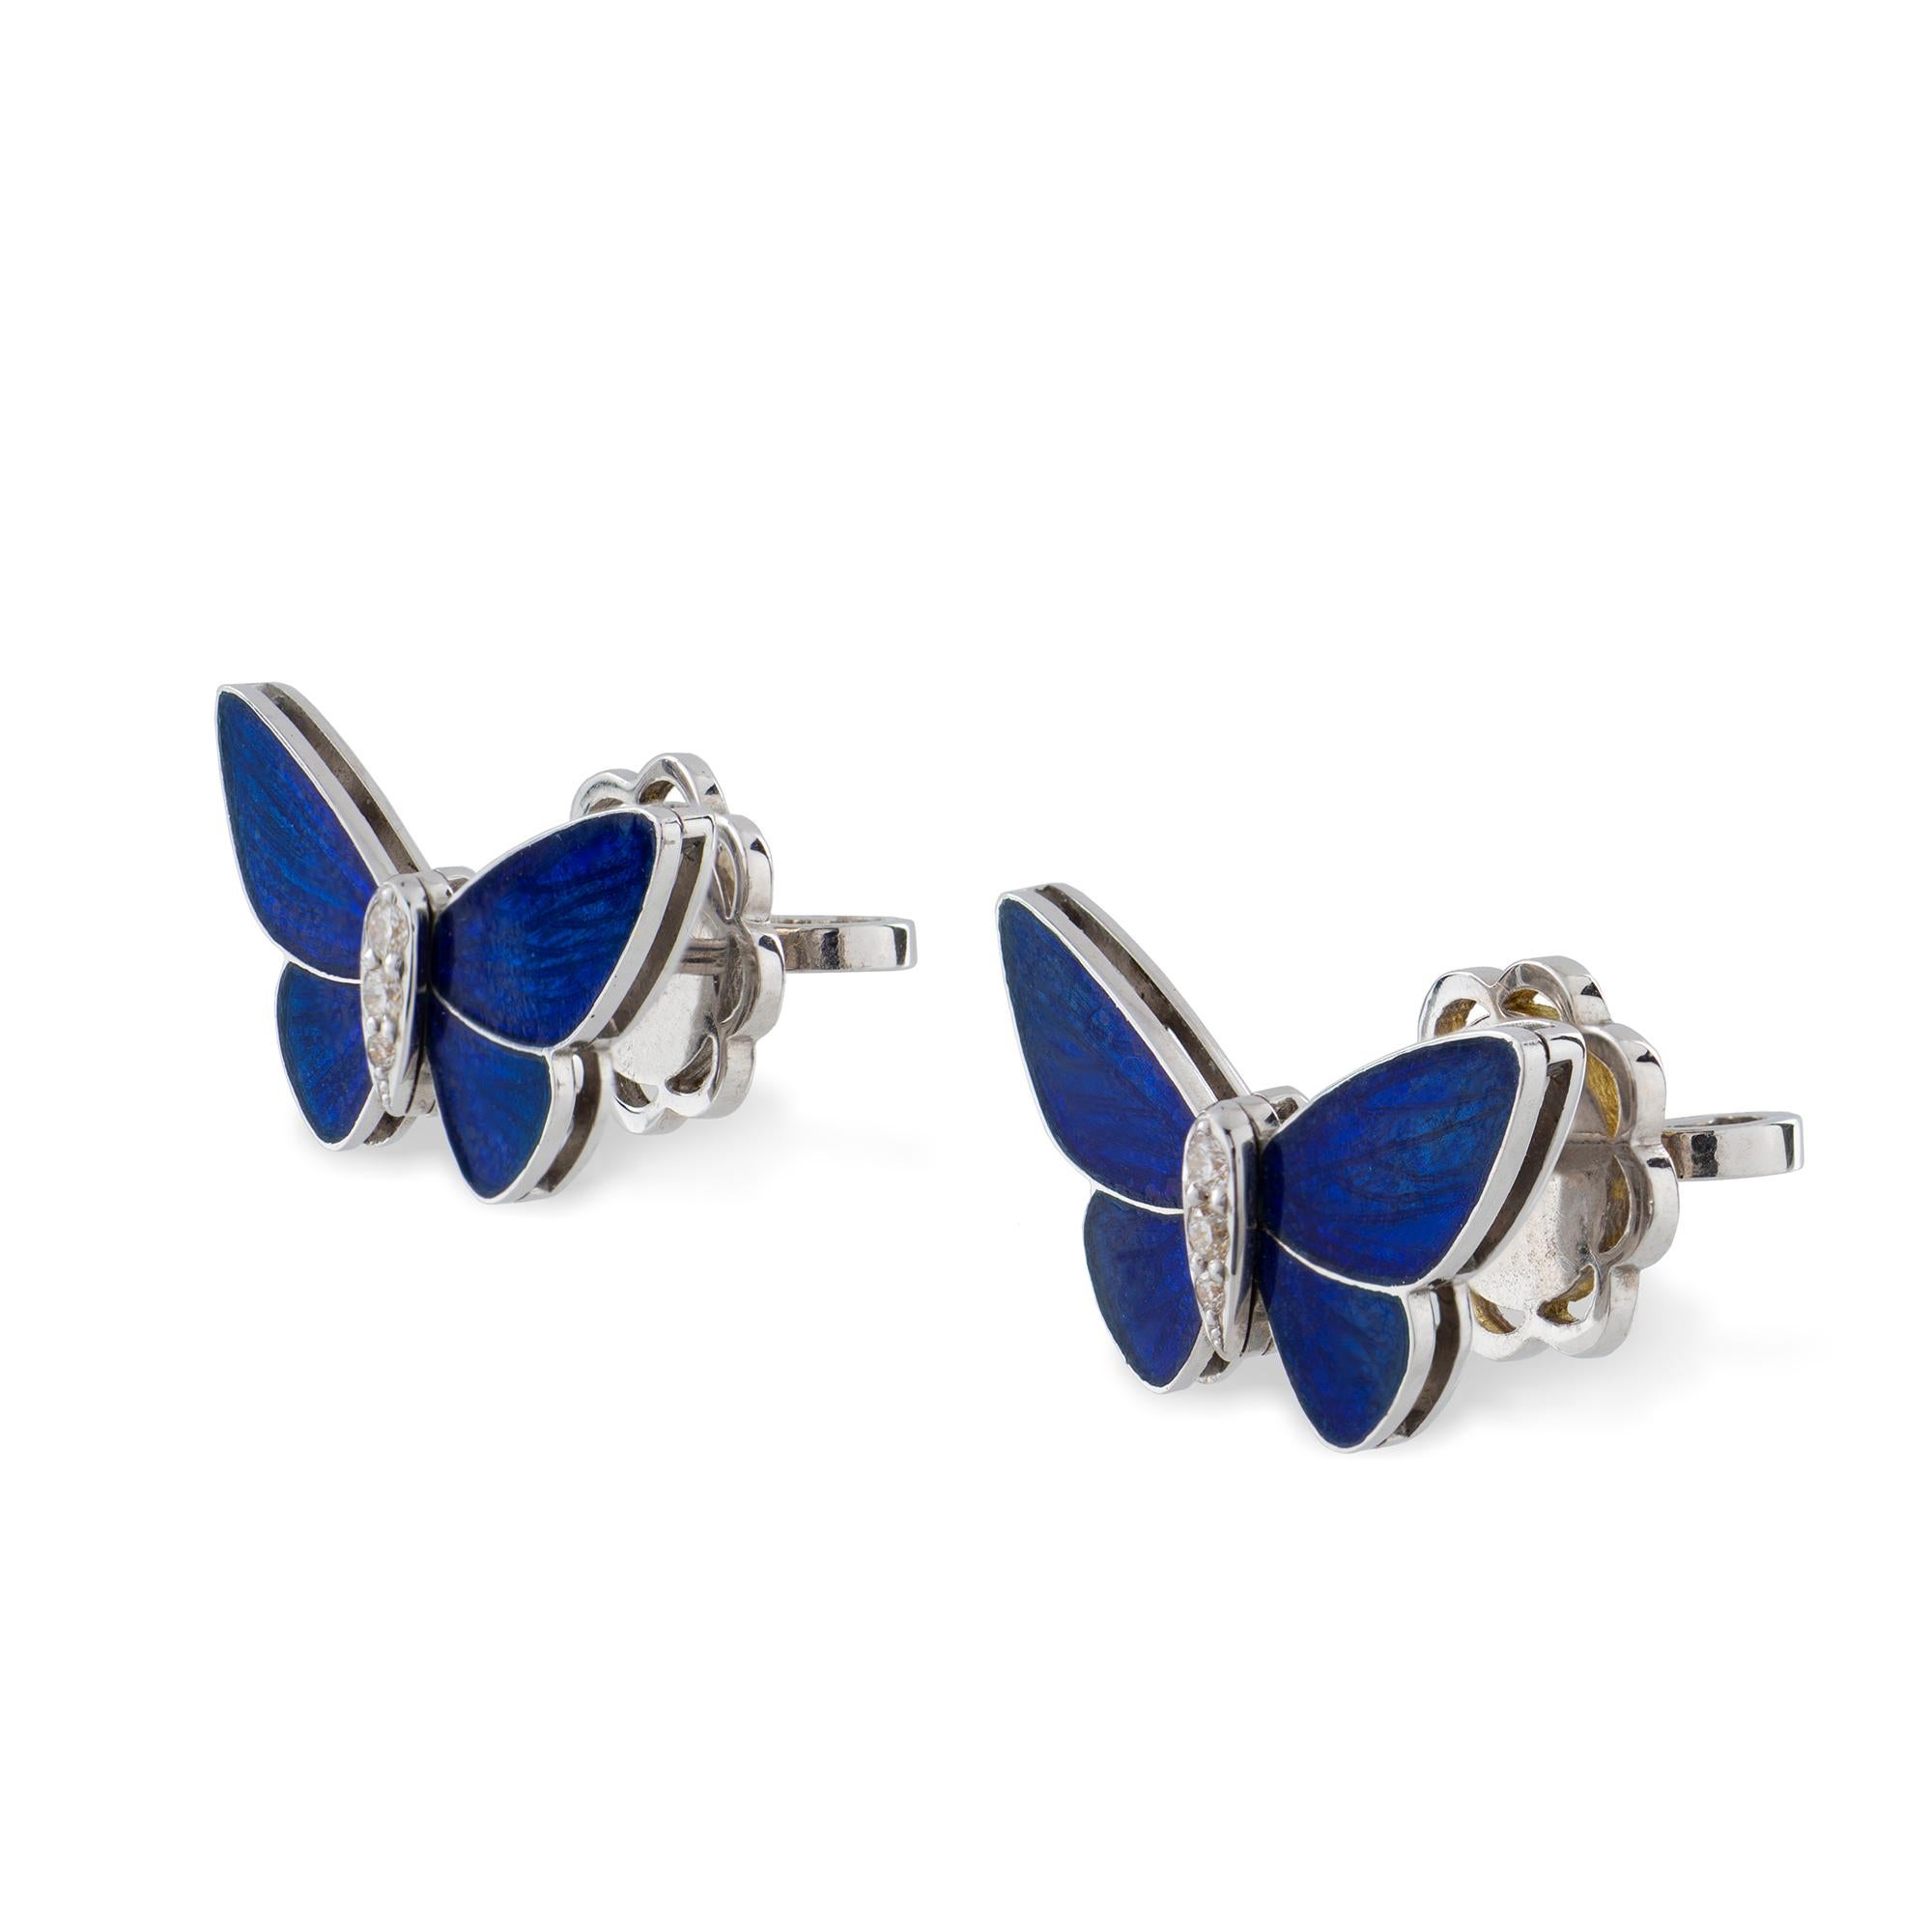 Une paire de boucles d'oreilles papillon bleu nuit par Ilgiz F, chaque papillon avec des ailes émaillées bleu champlevé et des corps incrustés de diamants, montés en or blanc avec des raccords de poteau et de rouleau, fabriqués par Ilgiz